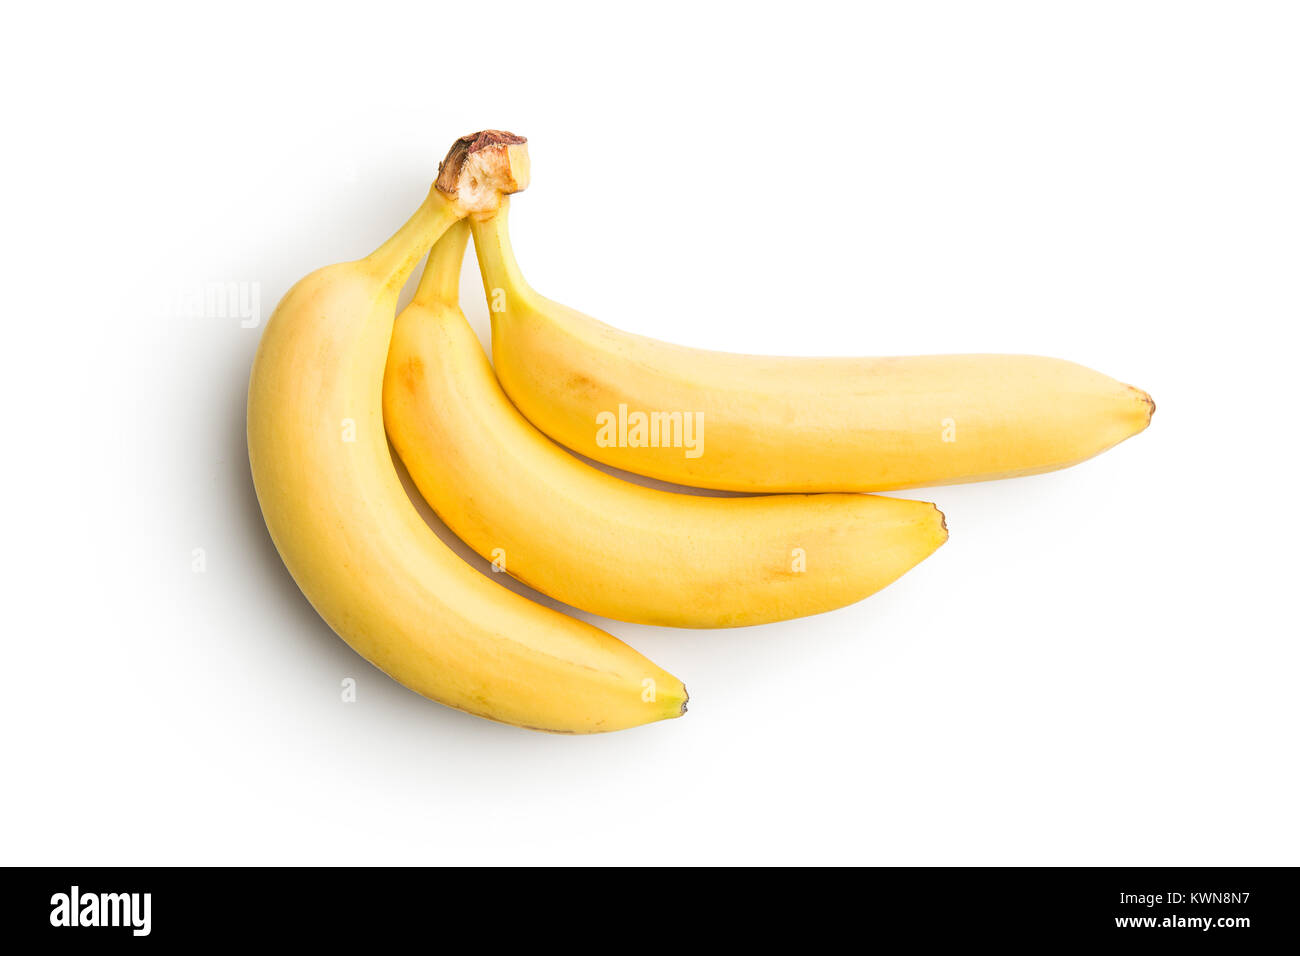 Lecker gelbe Banane auf weißem Hintergrund. Stockfoto